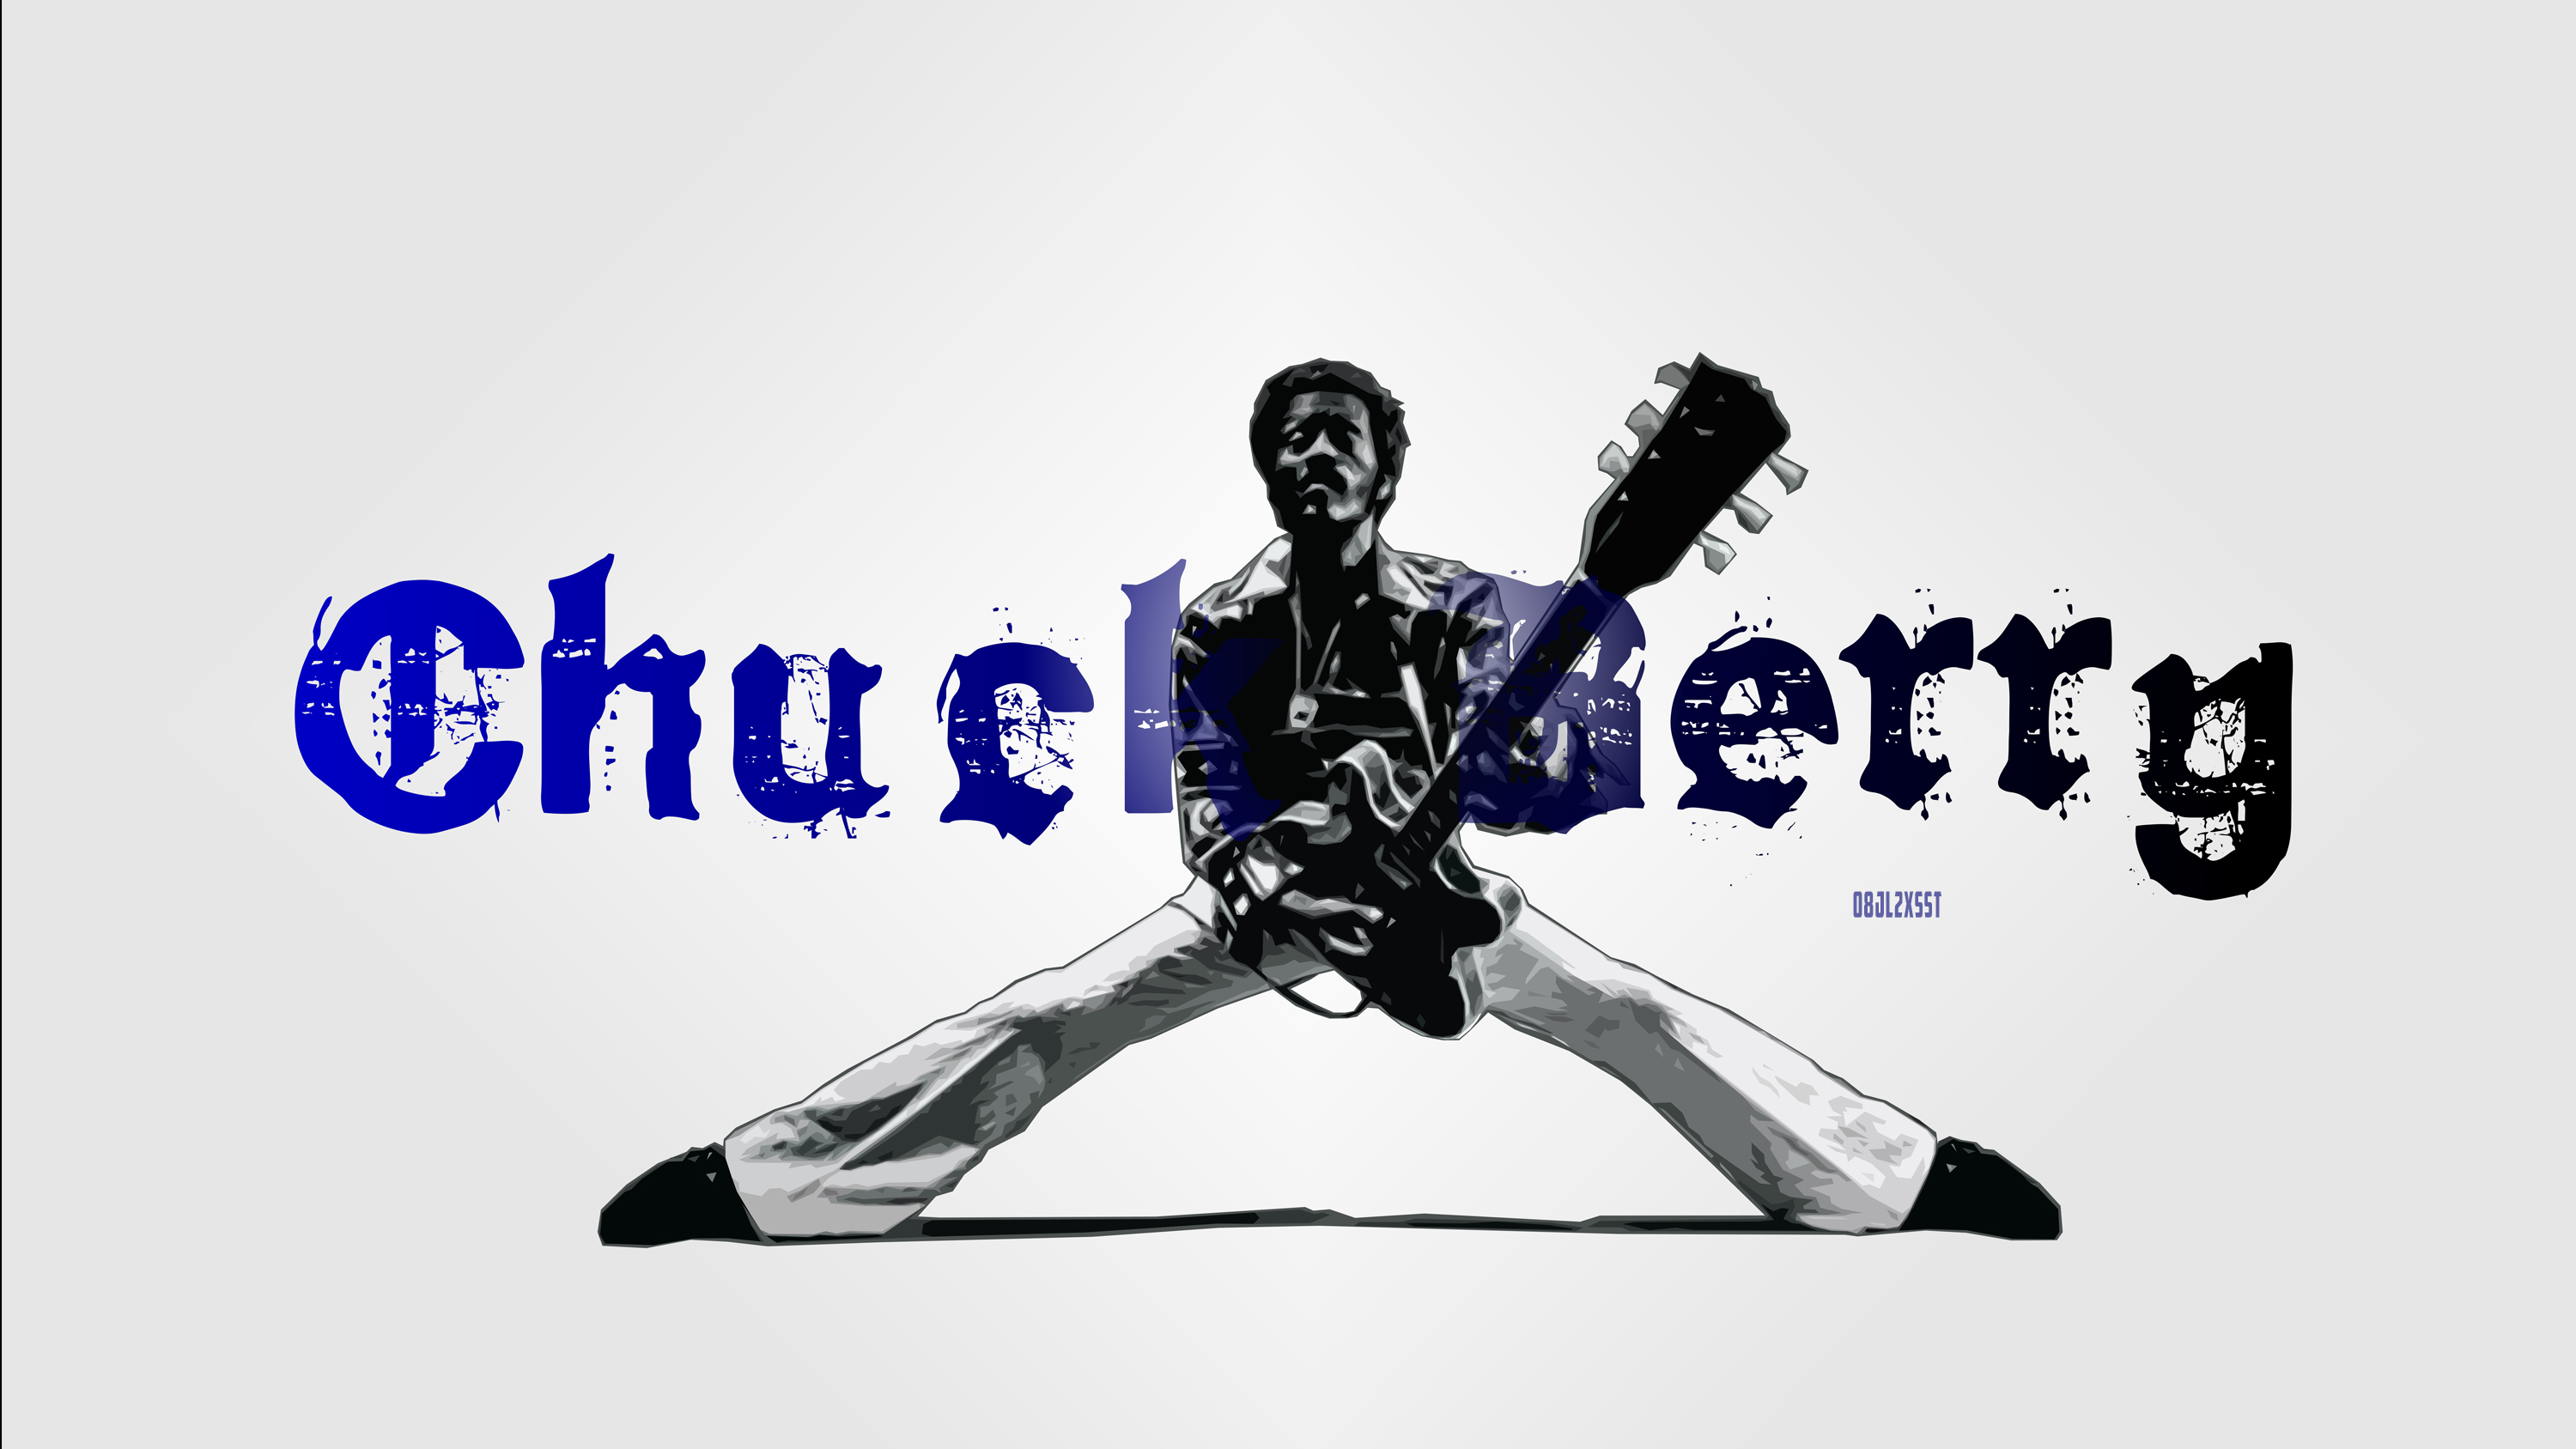 Artistic Chuck Berry Guitar Guitarist Music Musician Rock Amp Roll Singer 3000x1688